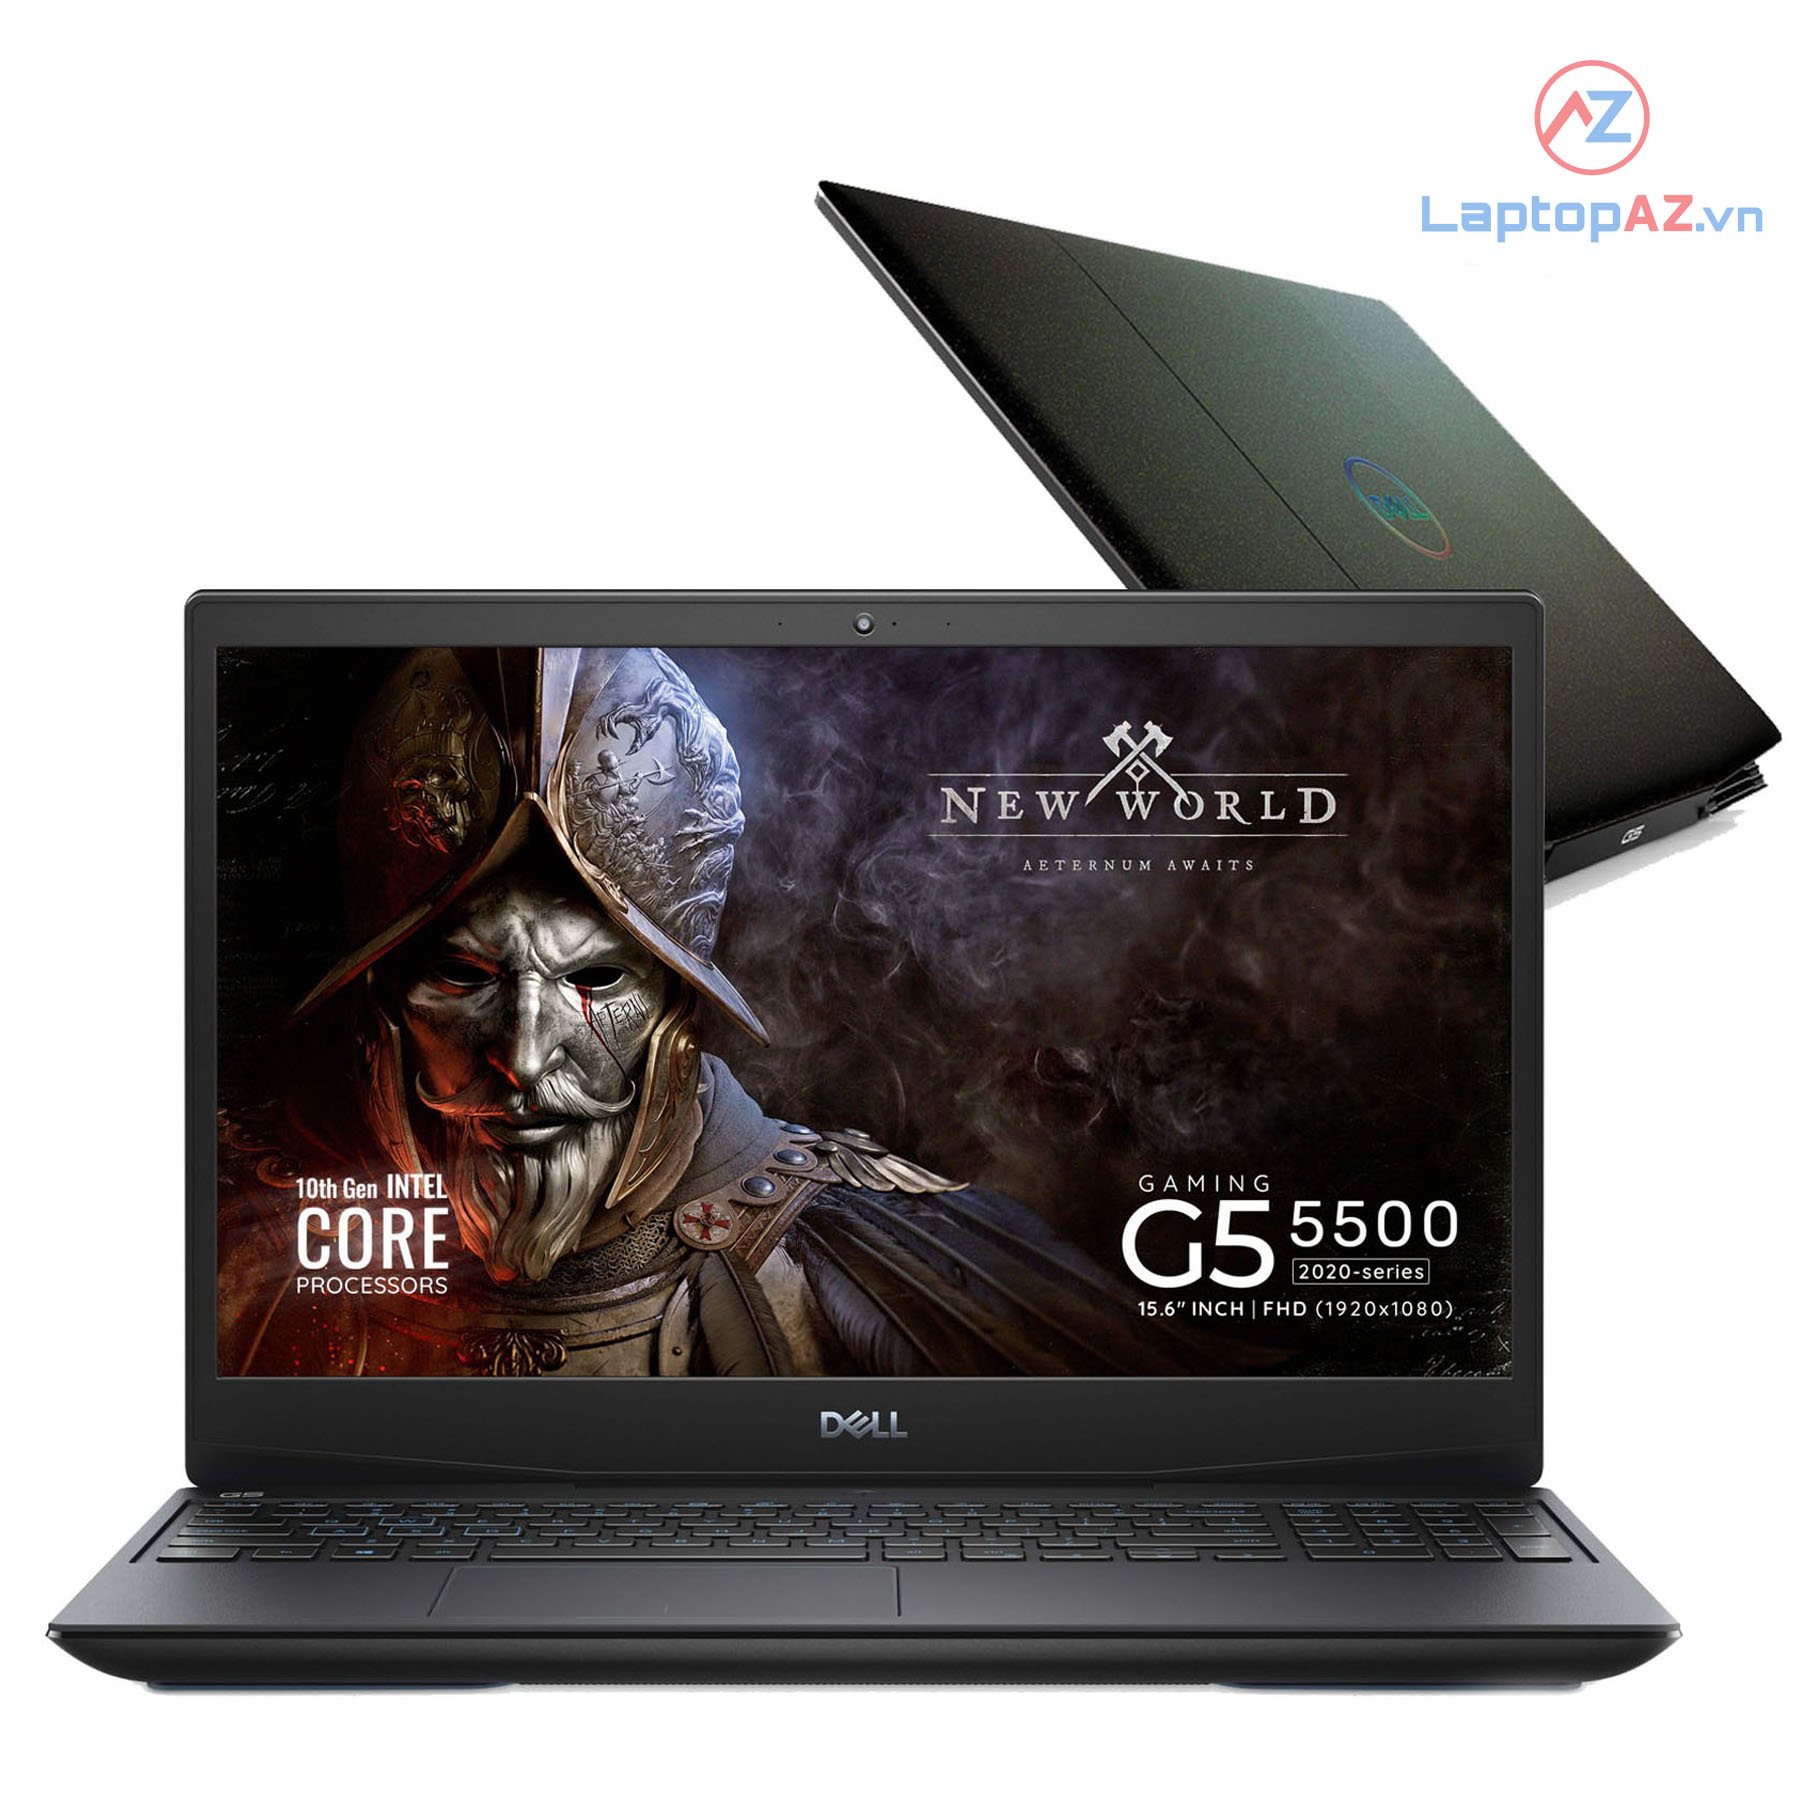 Bán Laptop Dell G5 5500 core i7 chính hãng 